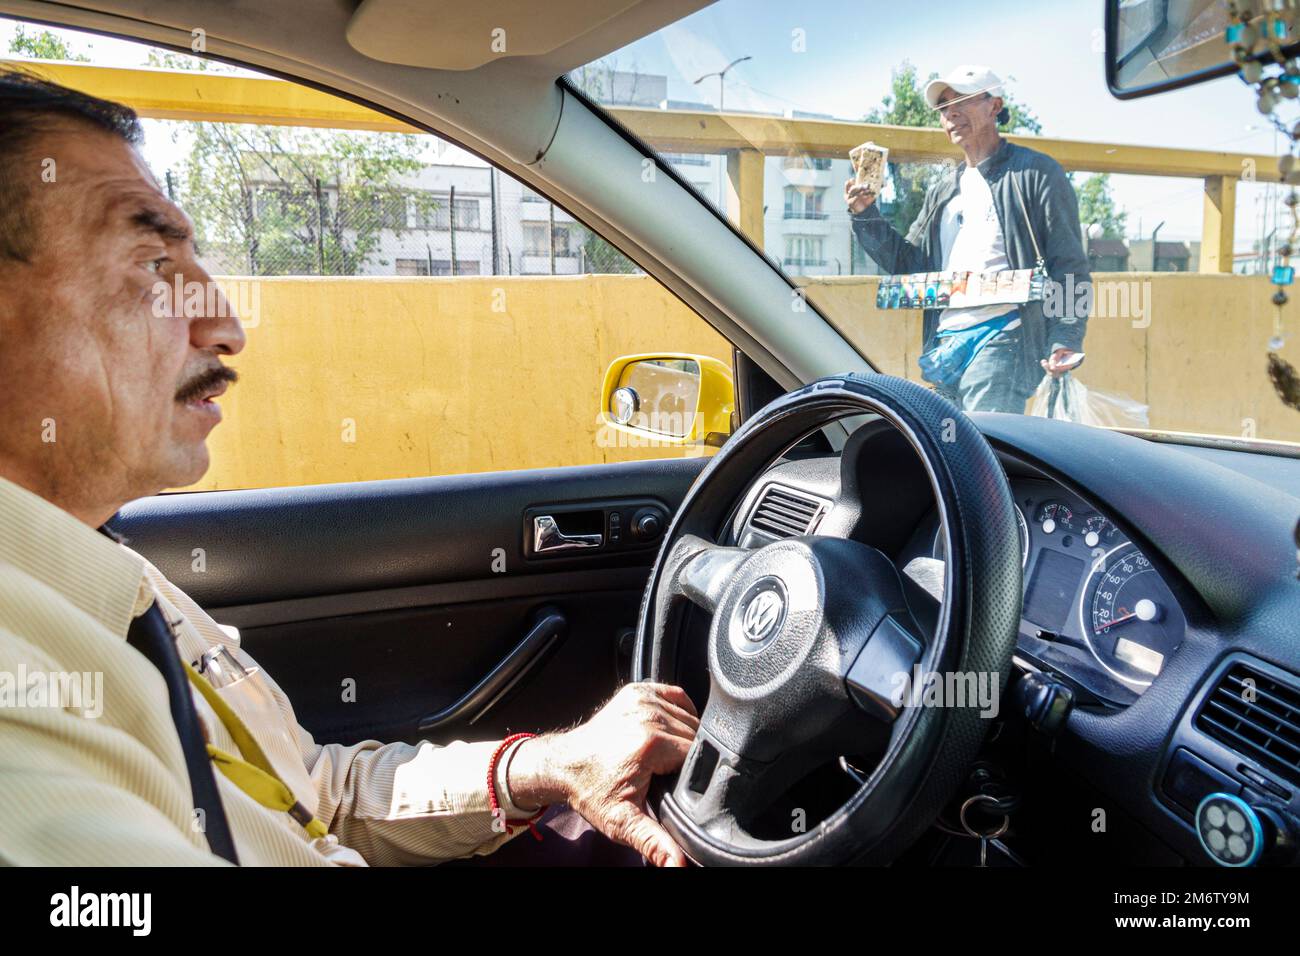 Città del Messico, taxi taxi tassicab conducente guida, strada venditore, uomo uomini maschio adulti residenti residenti, dipendenti lavoratori lavoratori lavoro wor Foto Stock